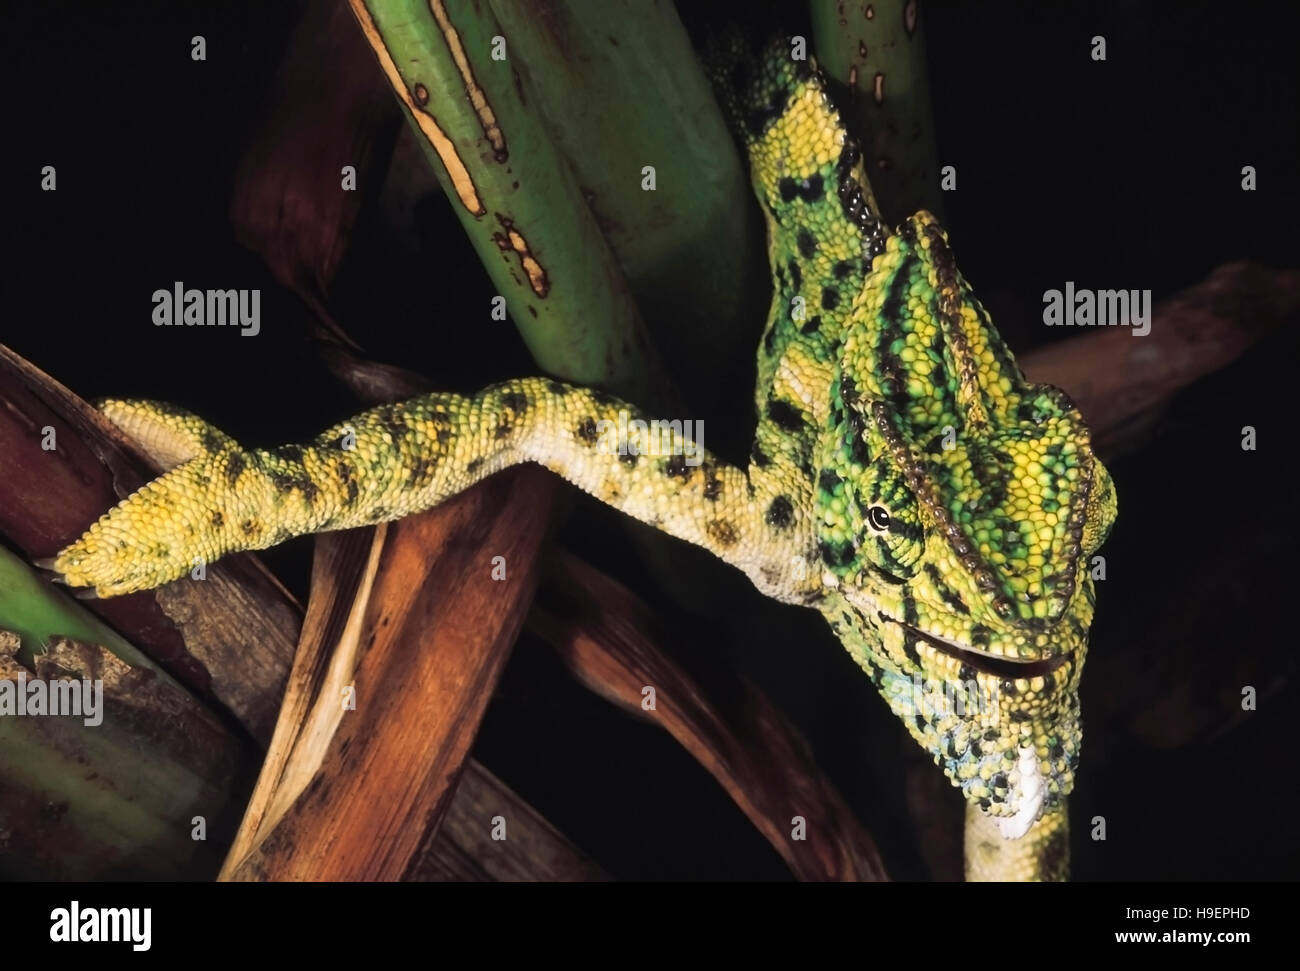 Indian Chameleon, Chamaeleo zeylanicus, Pune district, Maharashtra, India. Stock Photo